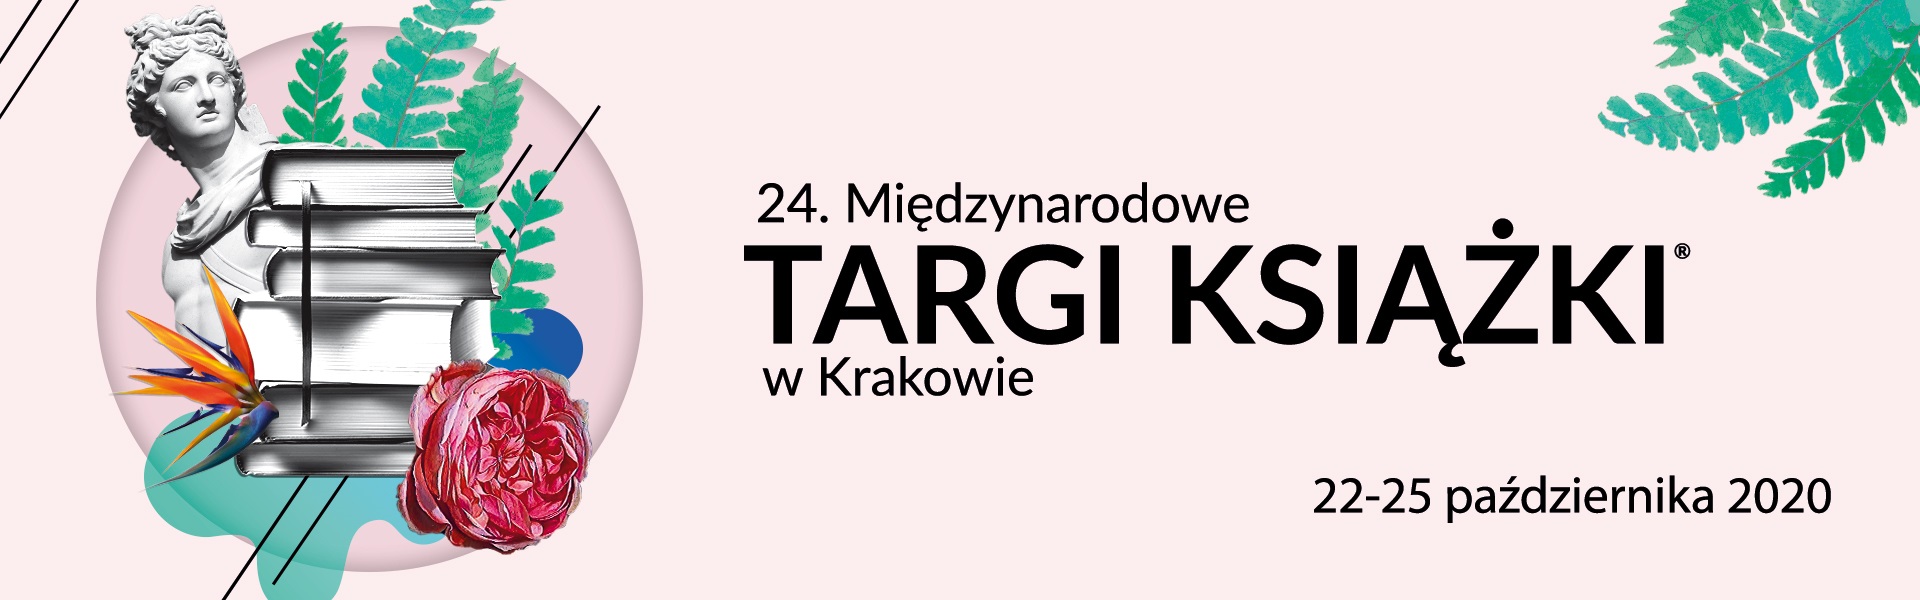 Targi Kraków Expo: Targi zgodnie z planem